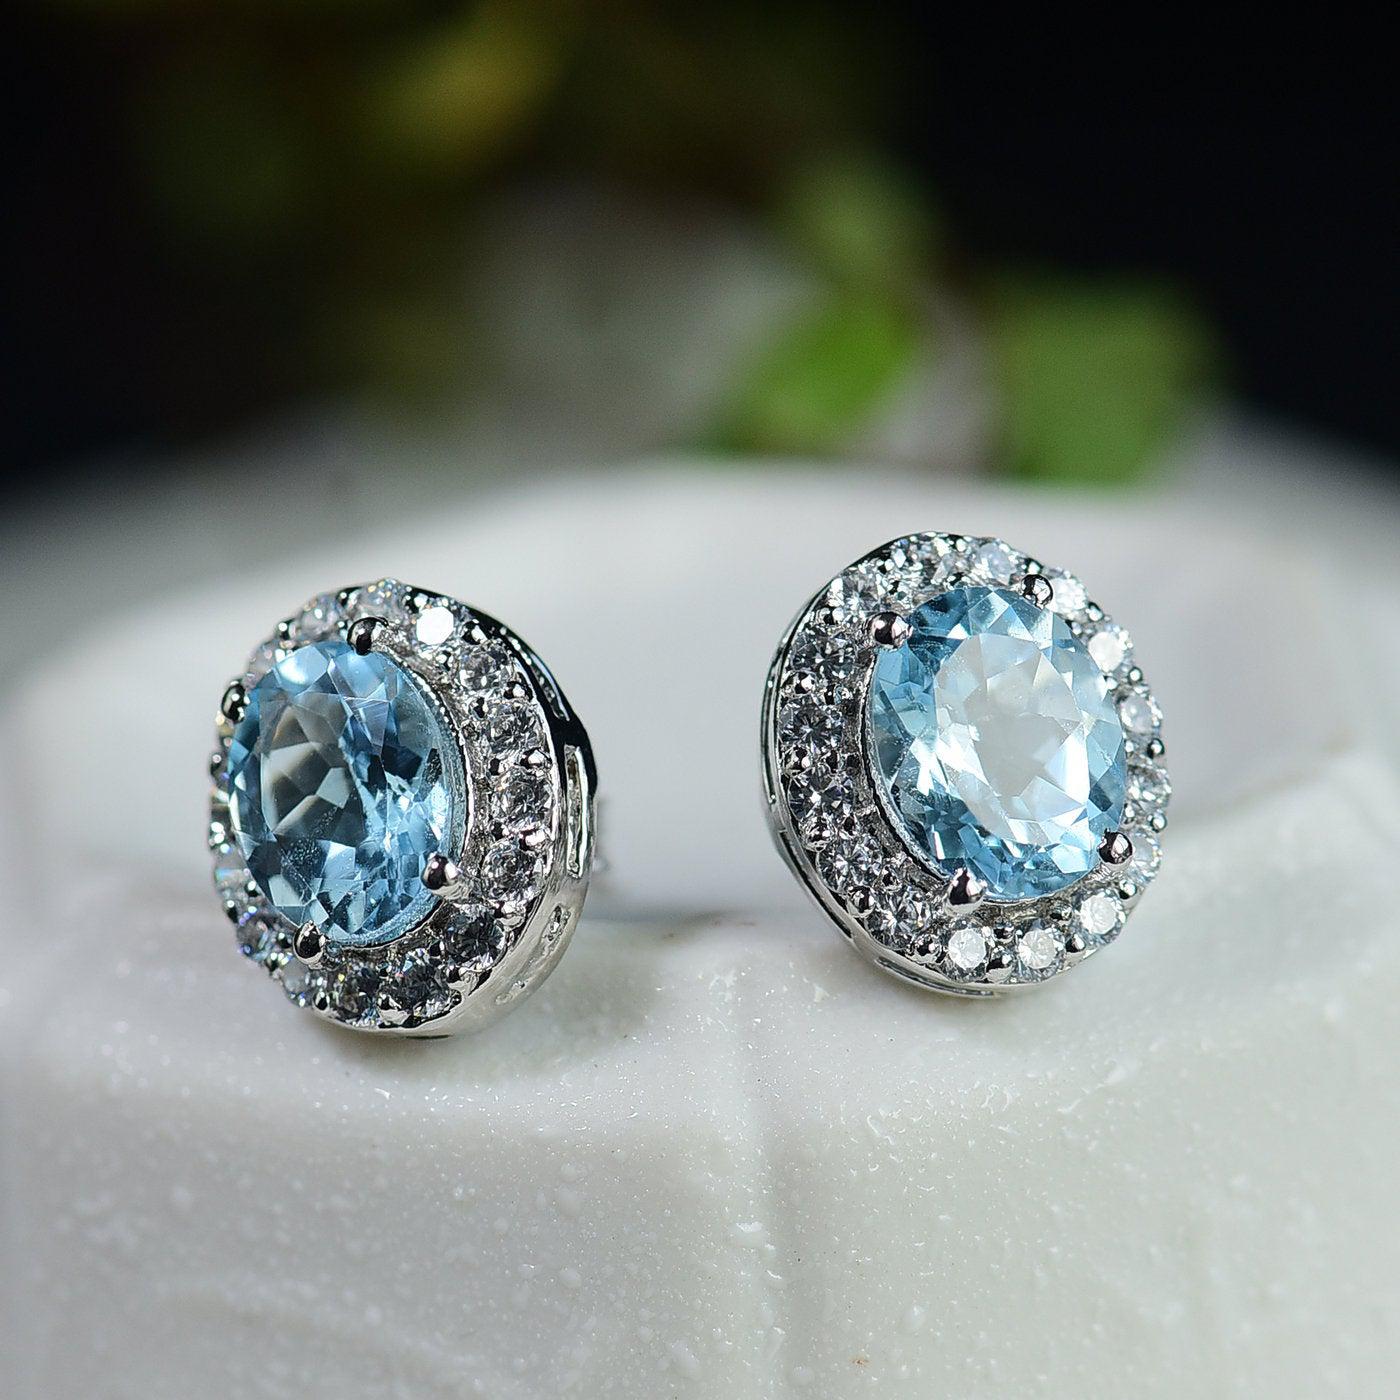 Blue Topaz Earring Studs | Oval Cut Blue Topaz Gemstone Stud | 3ct+3ct Blue Topaz Earring 4 Prong Anniversary Stud for Women | 925 Silver